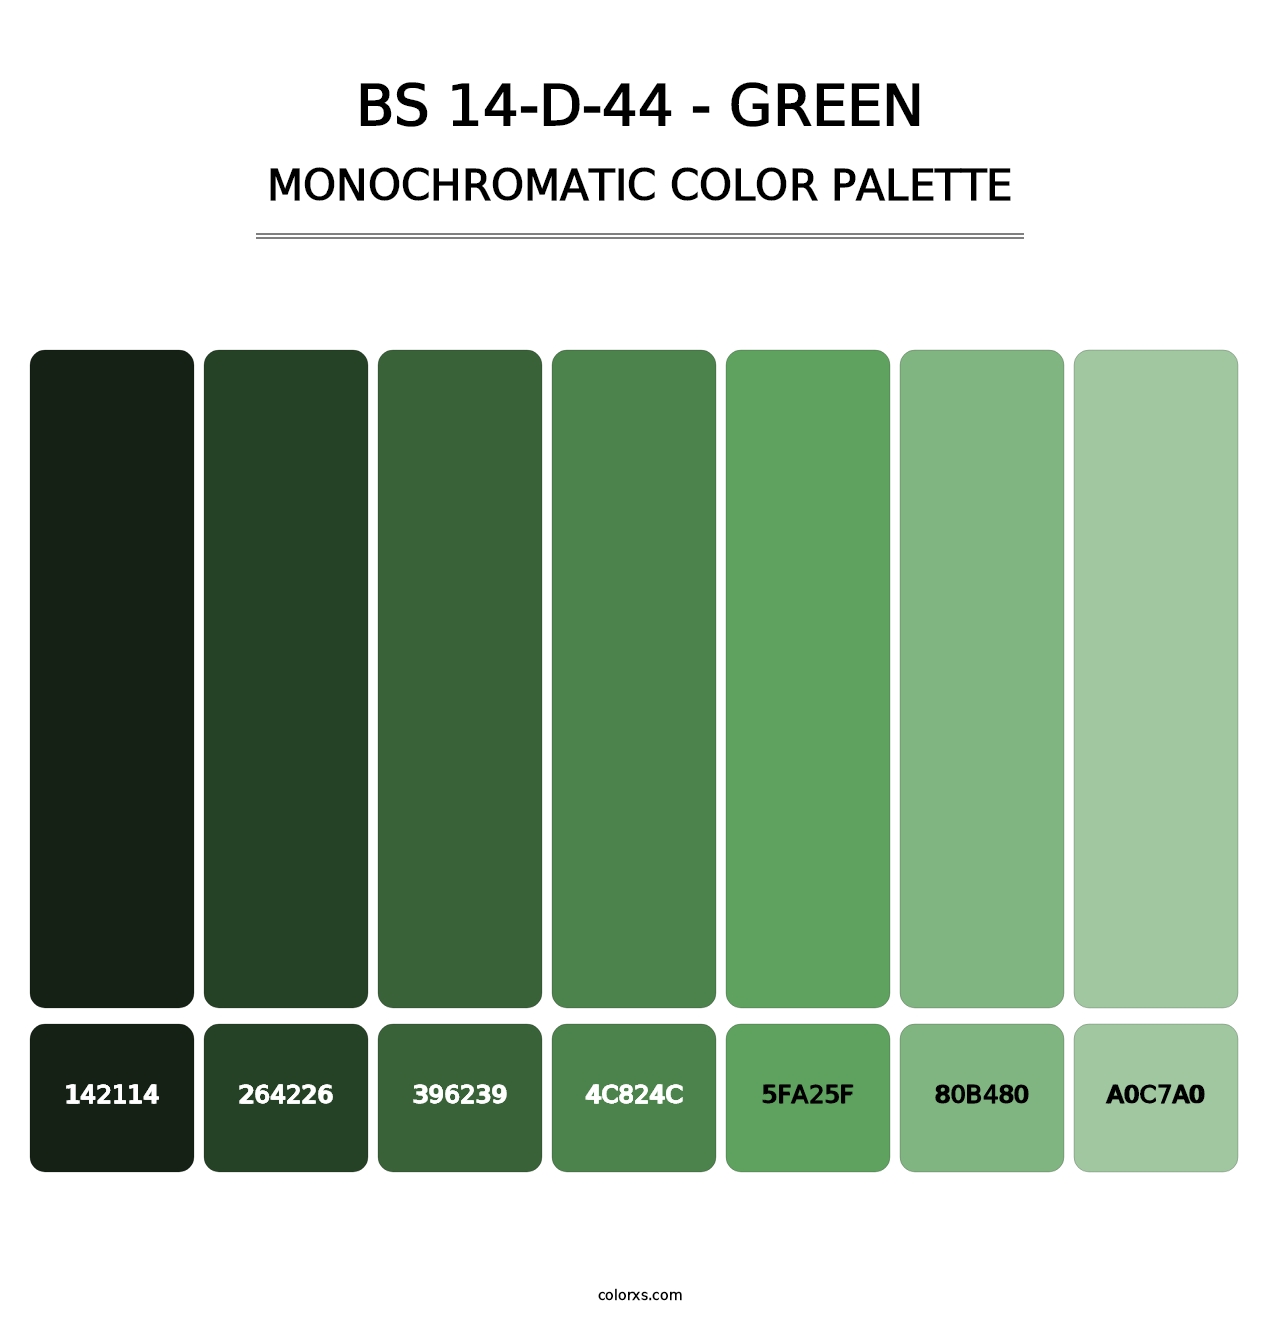 BS 14-D-44 - Green - Monochromatic Color Palette